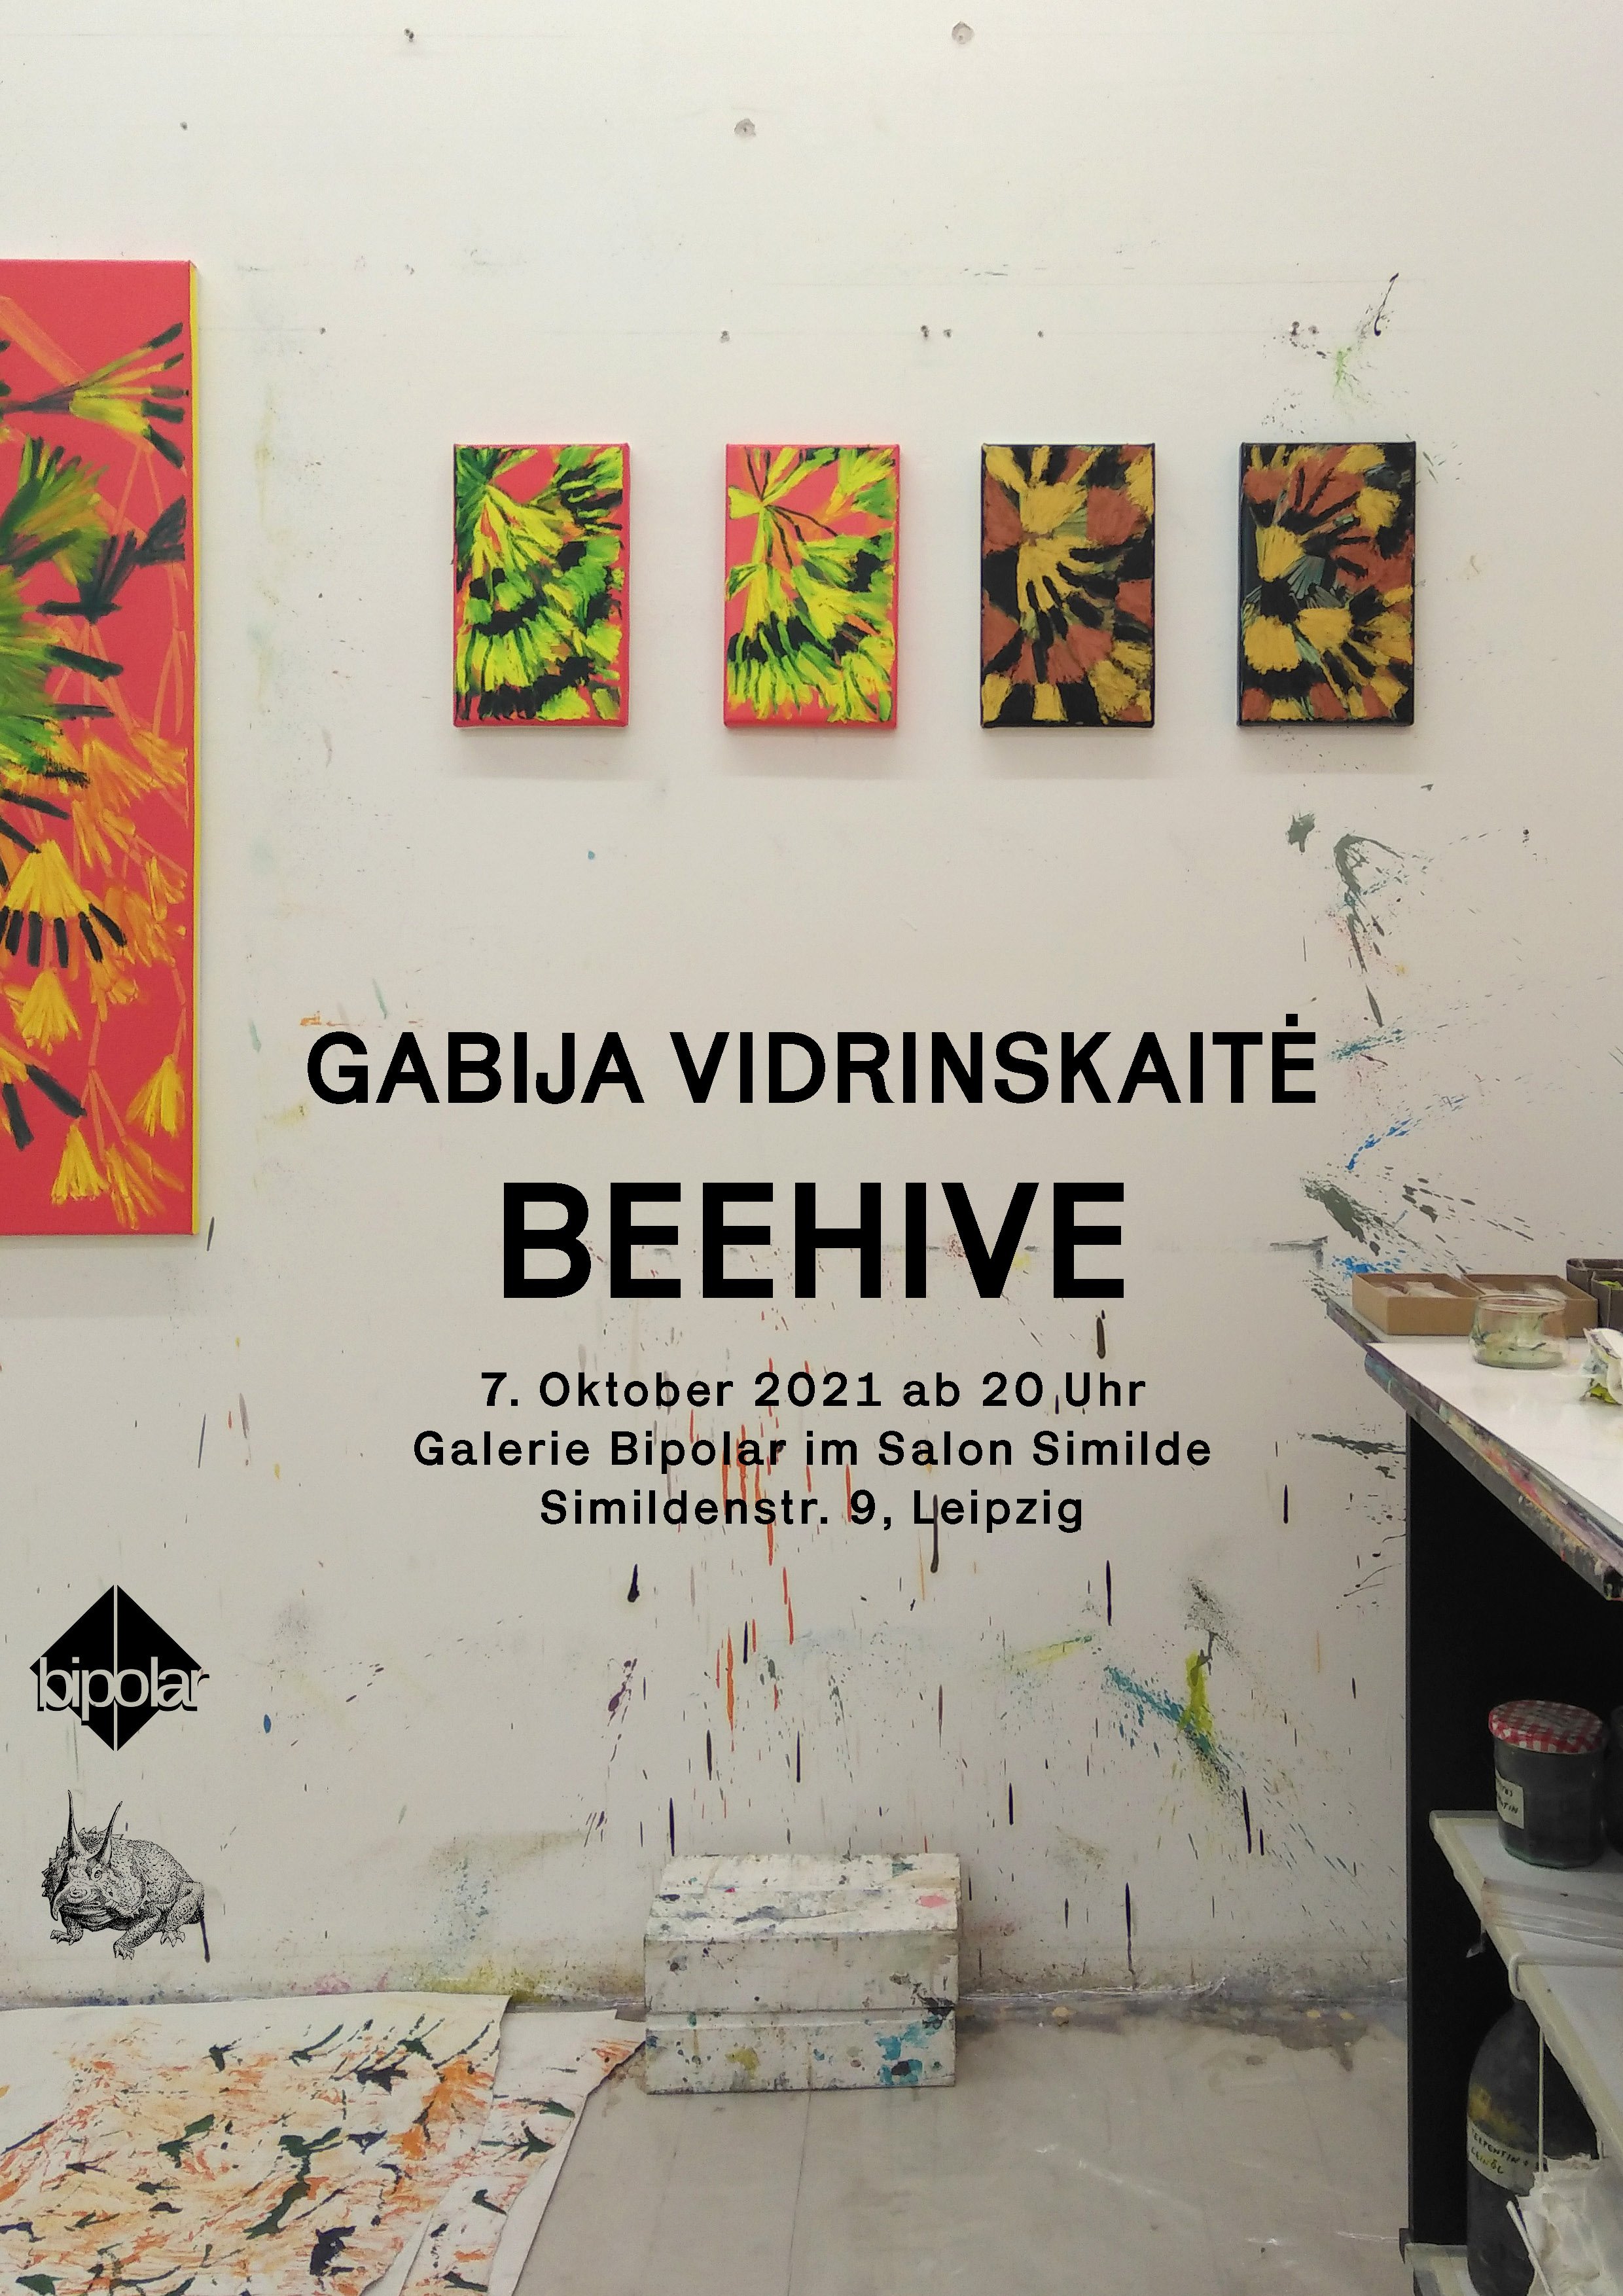  BEEHIVE  Galerie Bipolar im Salon Similde, Leipzig, DE  07.-14.10.2021 